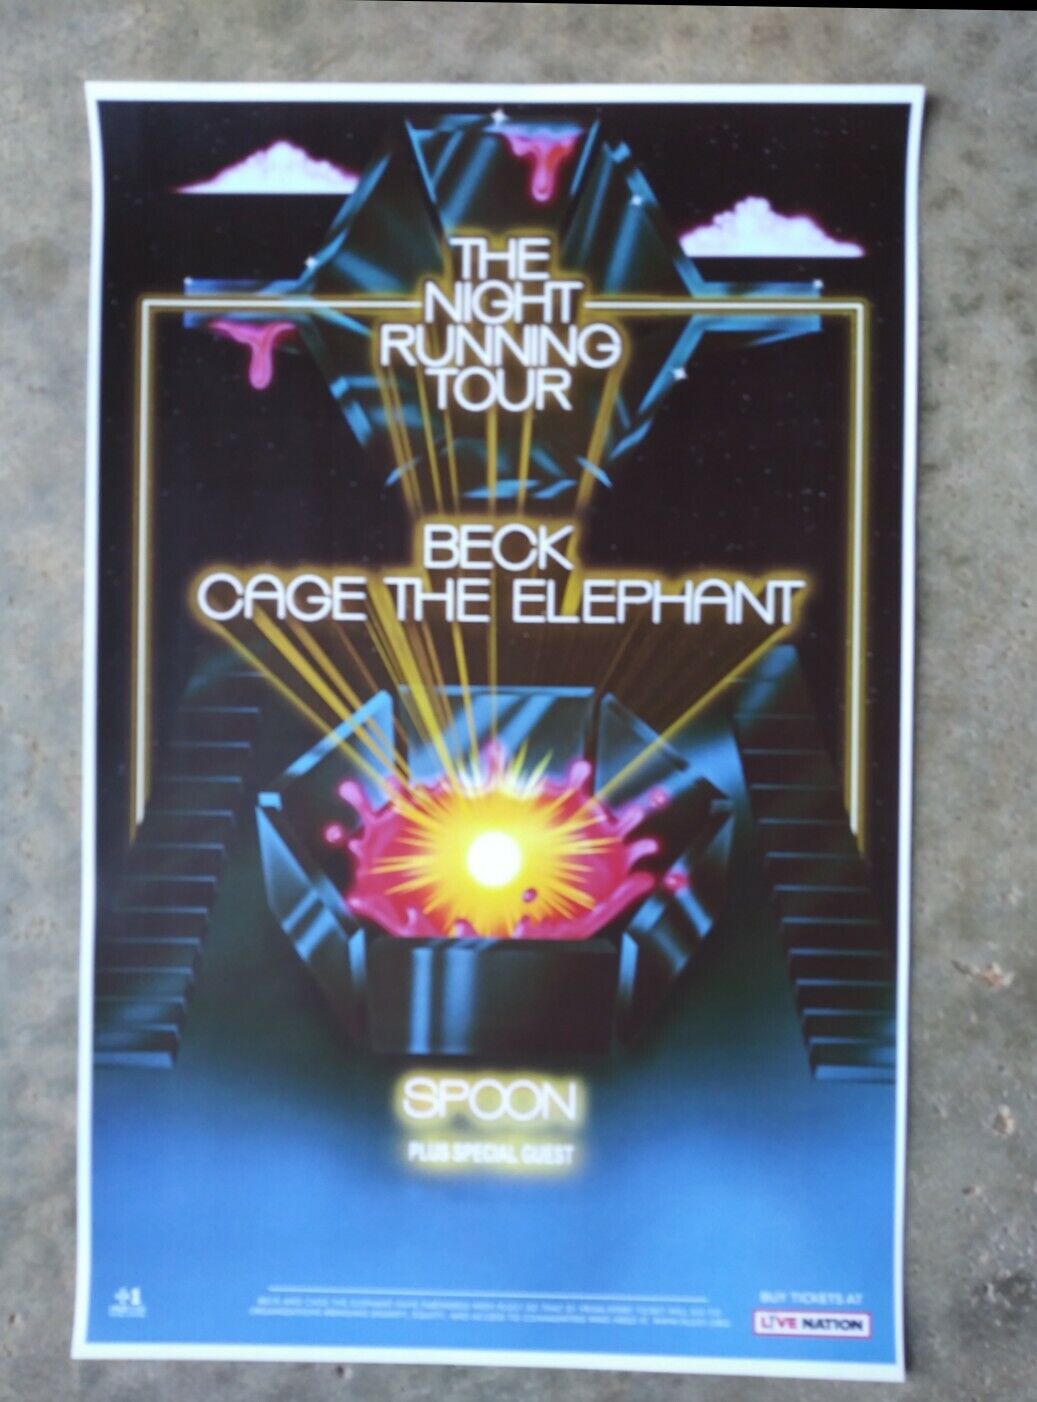 Beck 2019 11x17 Promo Tour Concert Poster Lp Vinyl Cage Elephant Cd